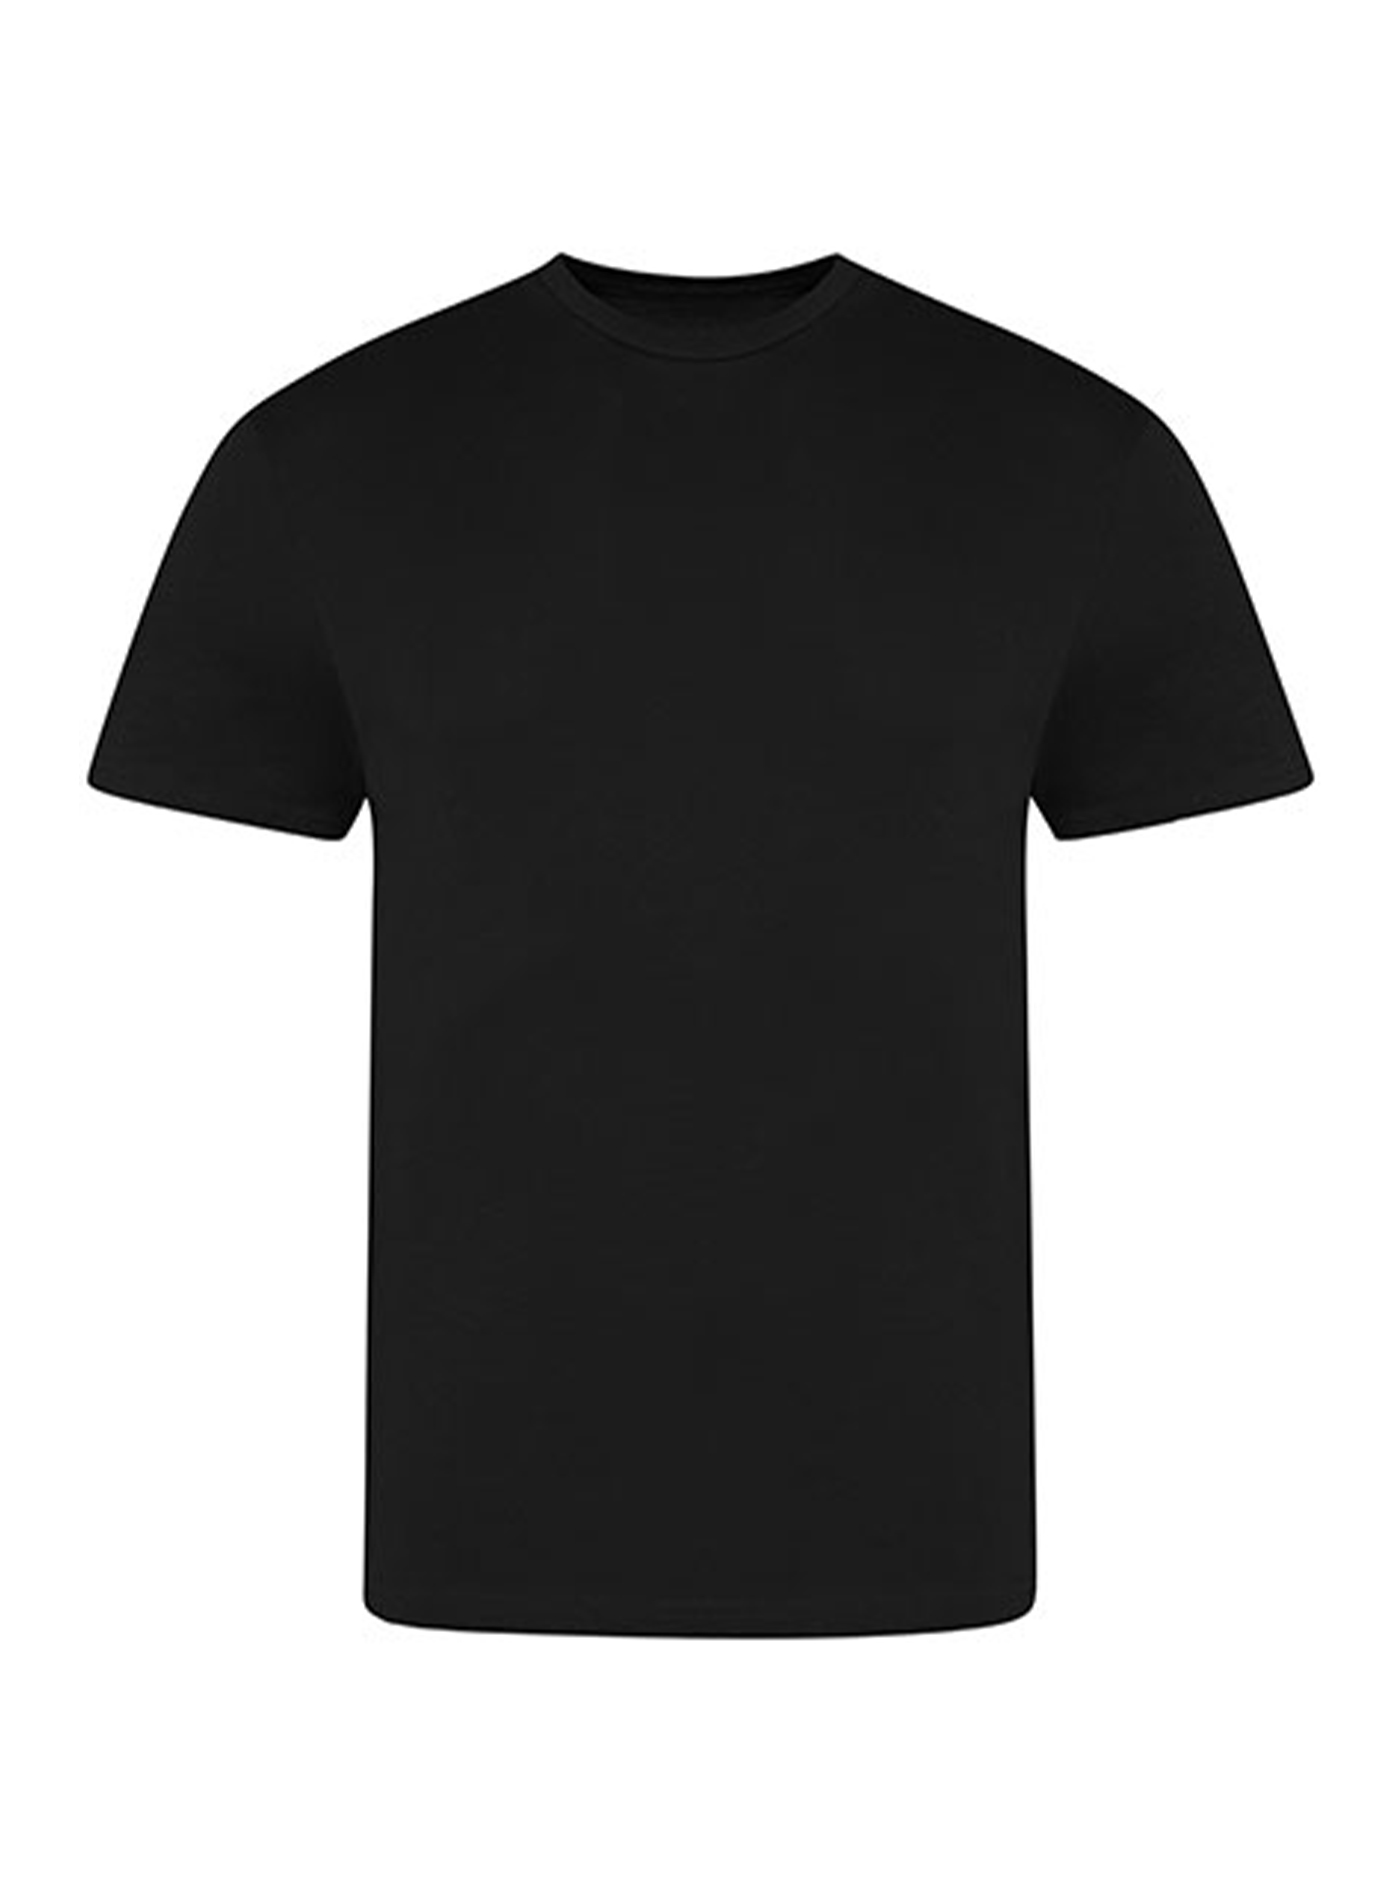 Pánské tričko Just Ts - černá L